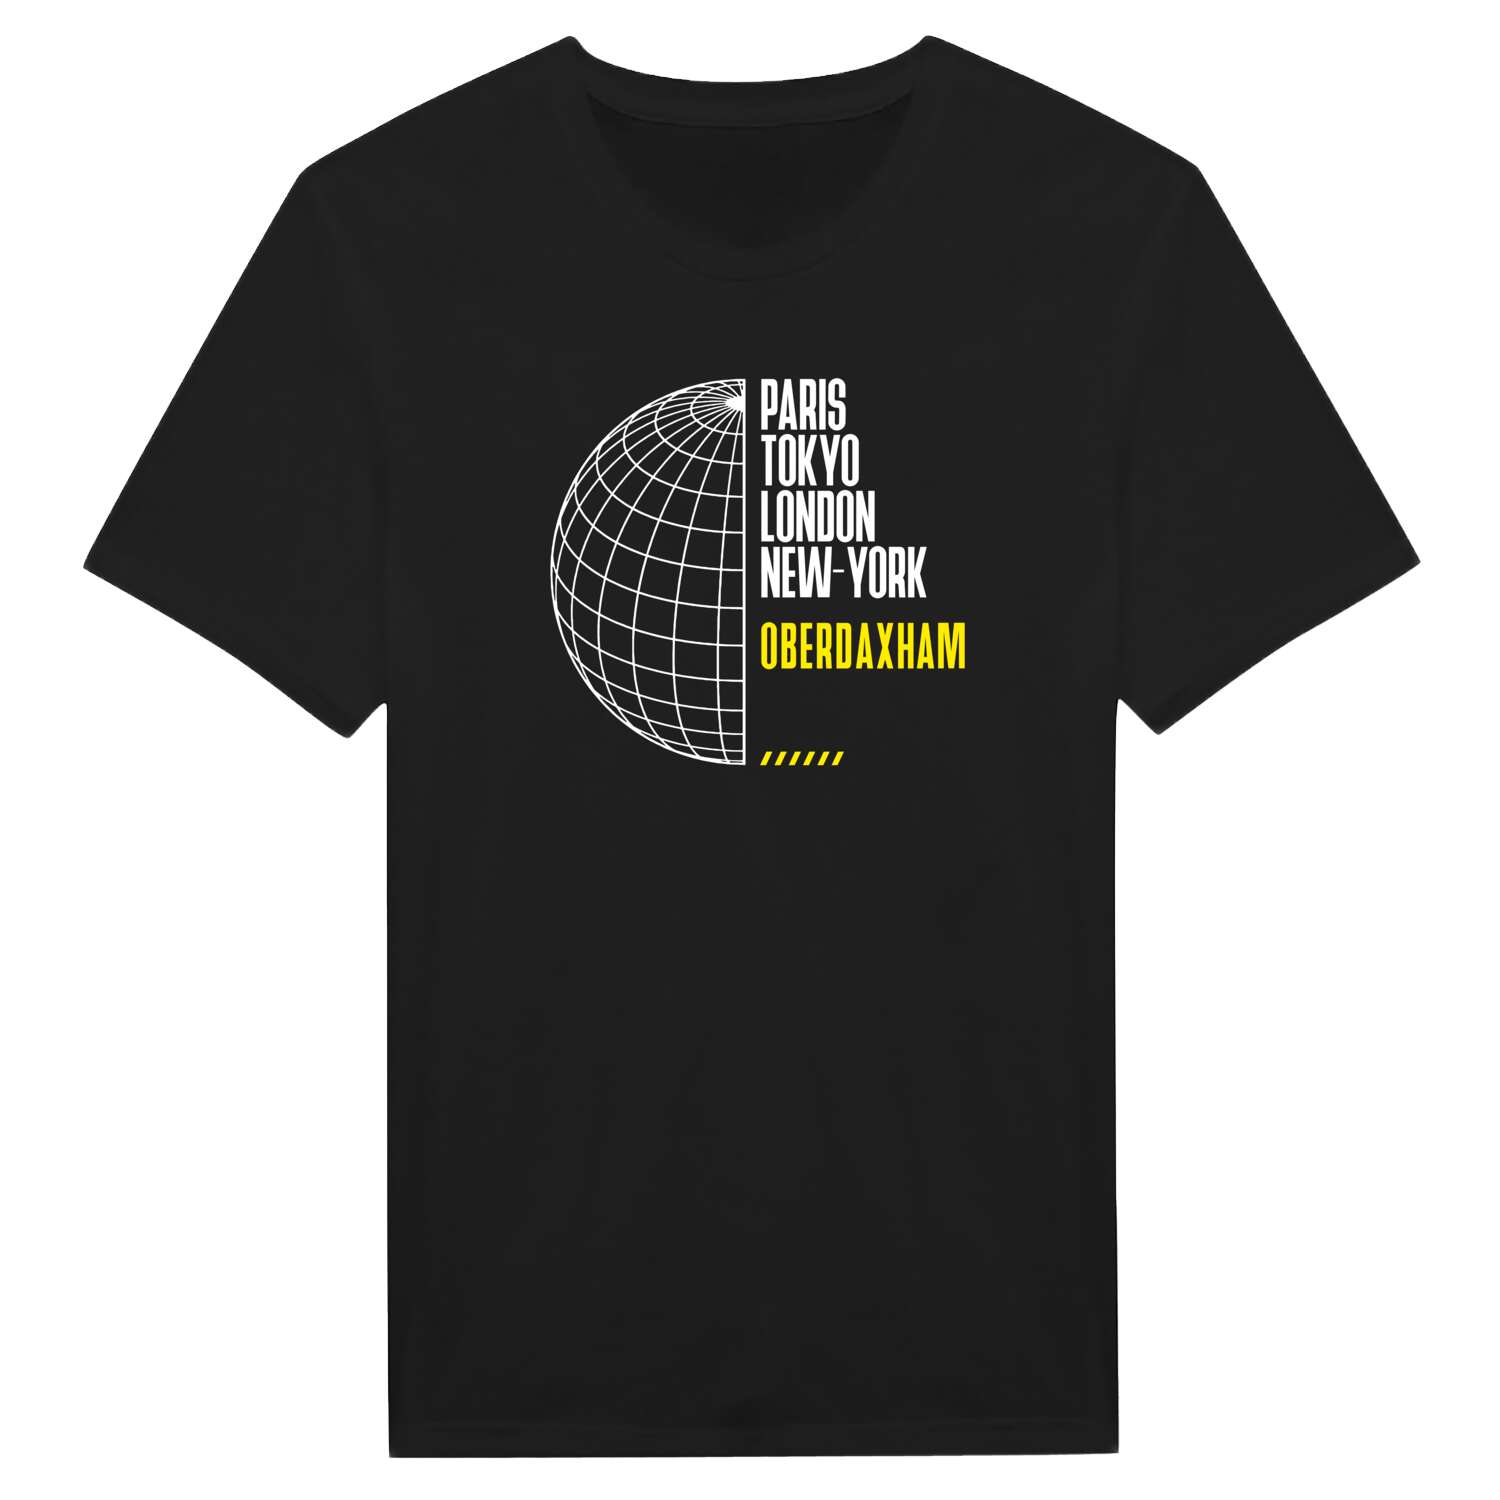 Oberdaxham T-Shirt »Paris Tokyo London«